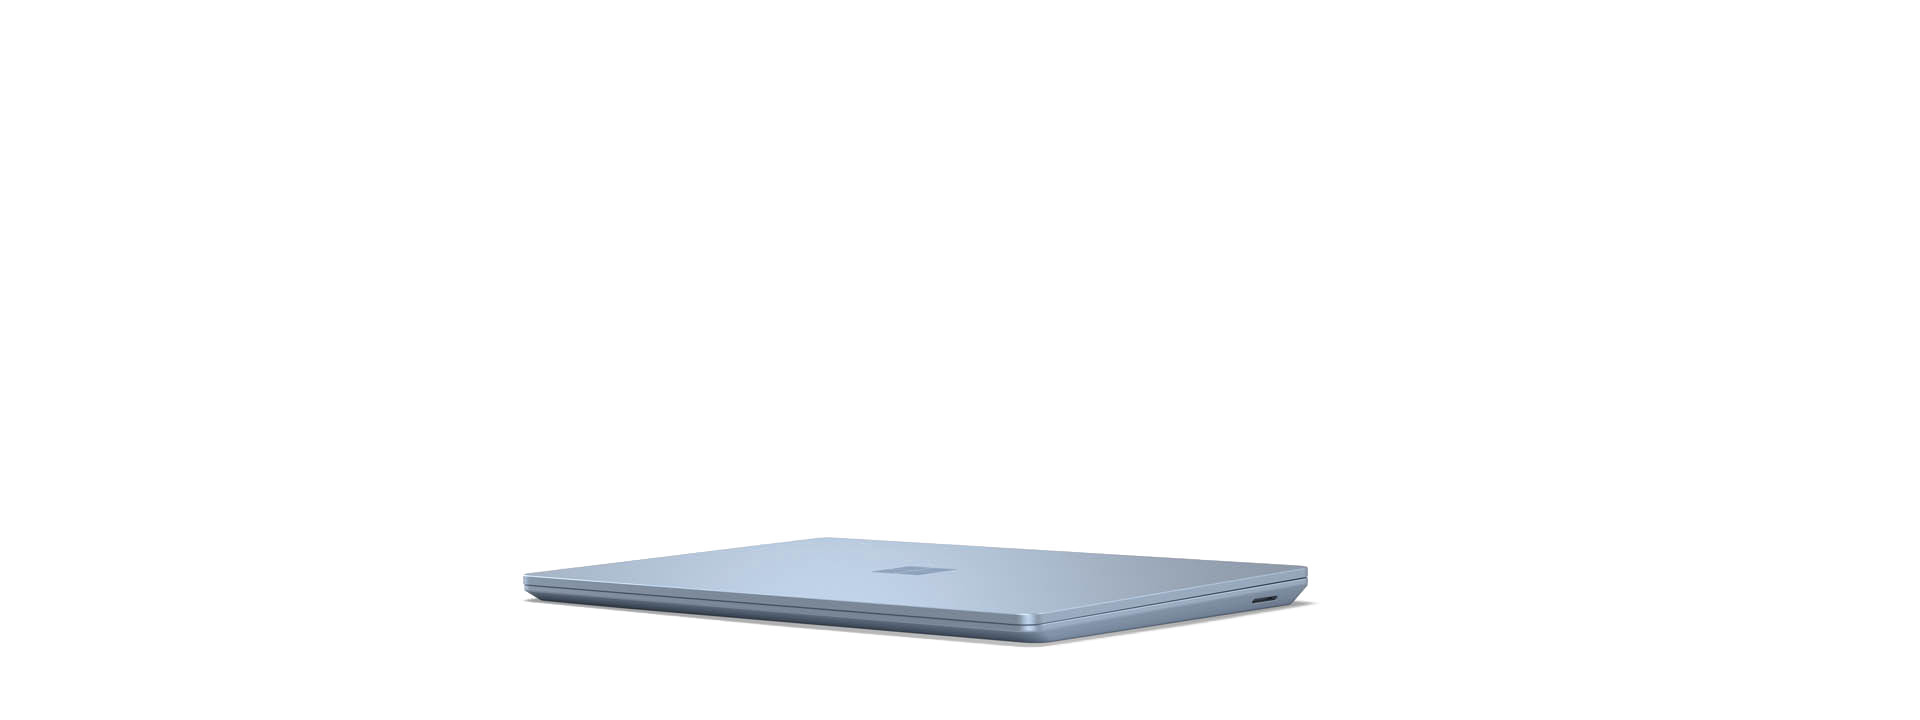 Surface Laptop Go の回転ビュー。